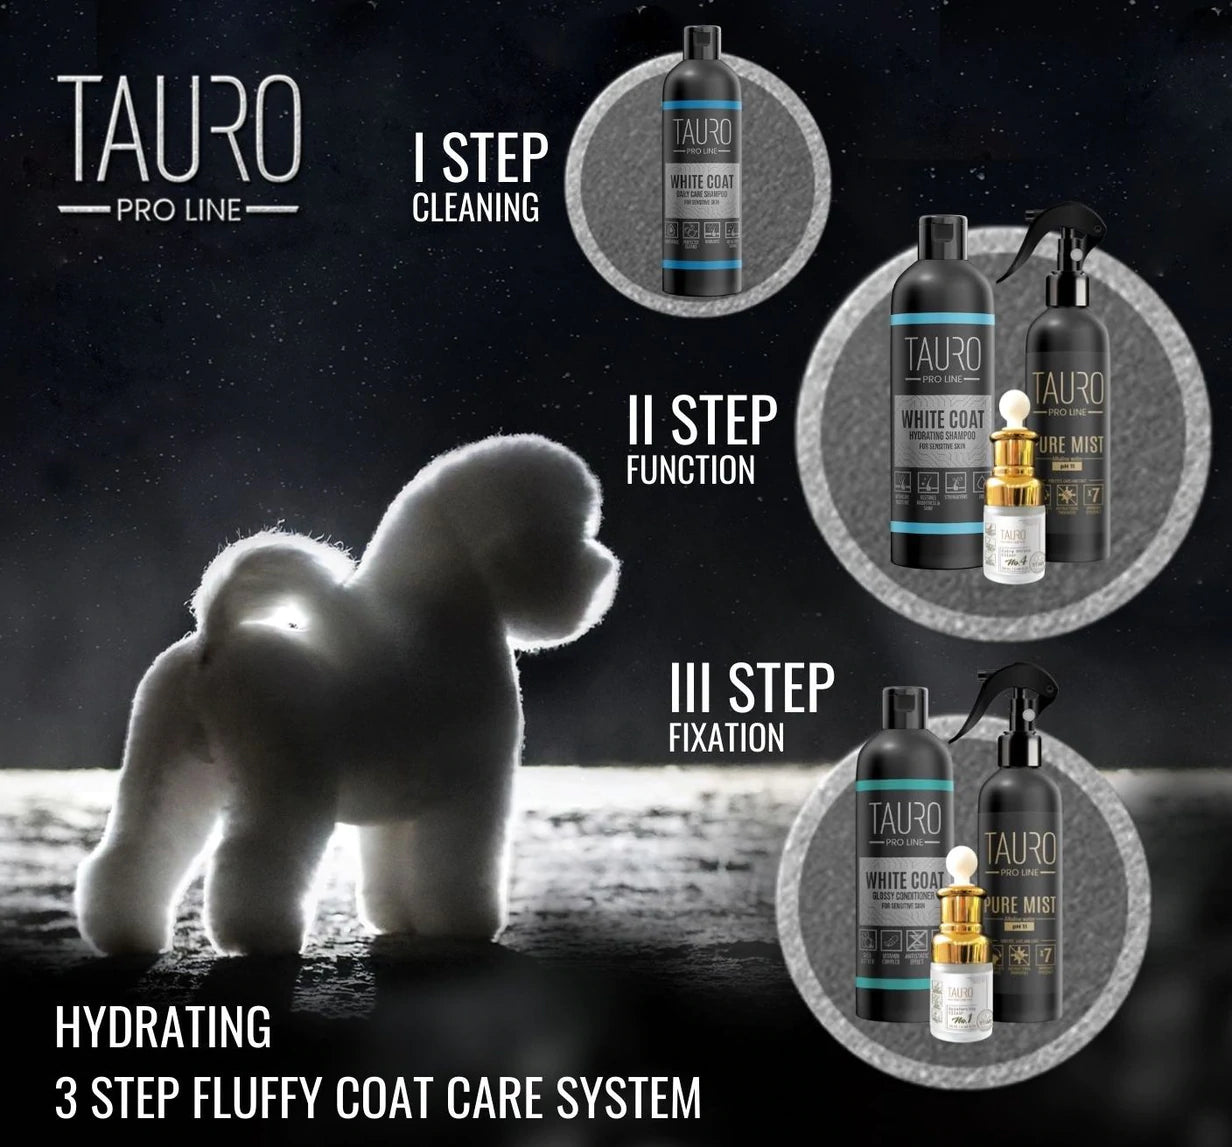 Tauro Pro Line - White Coat whitening shampoo